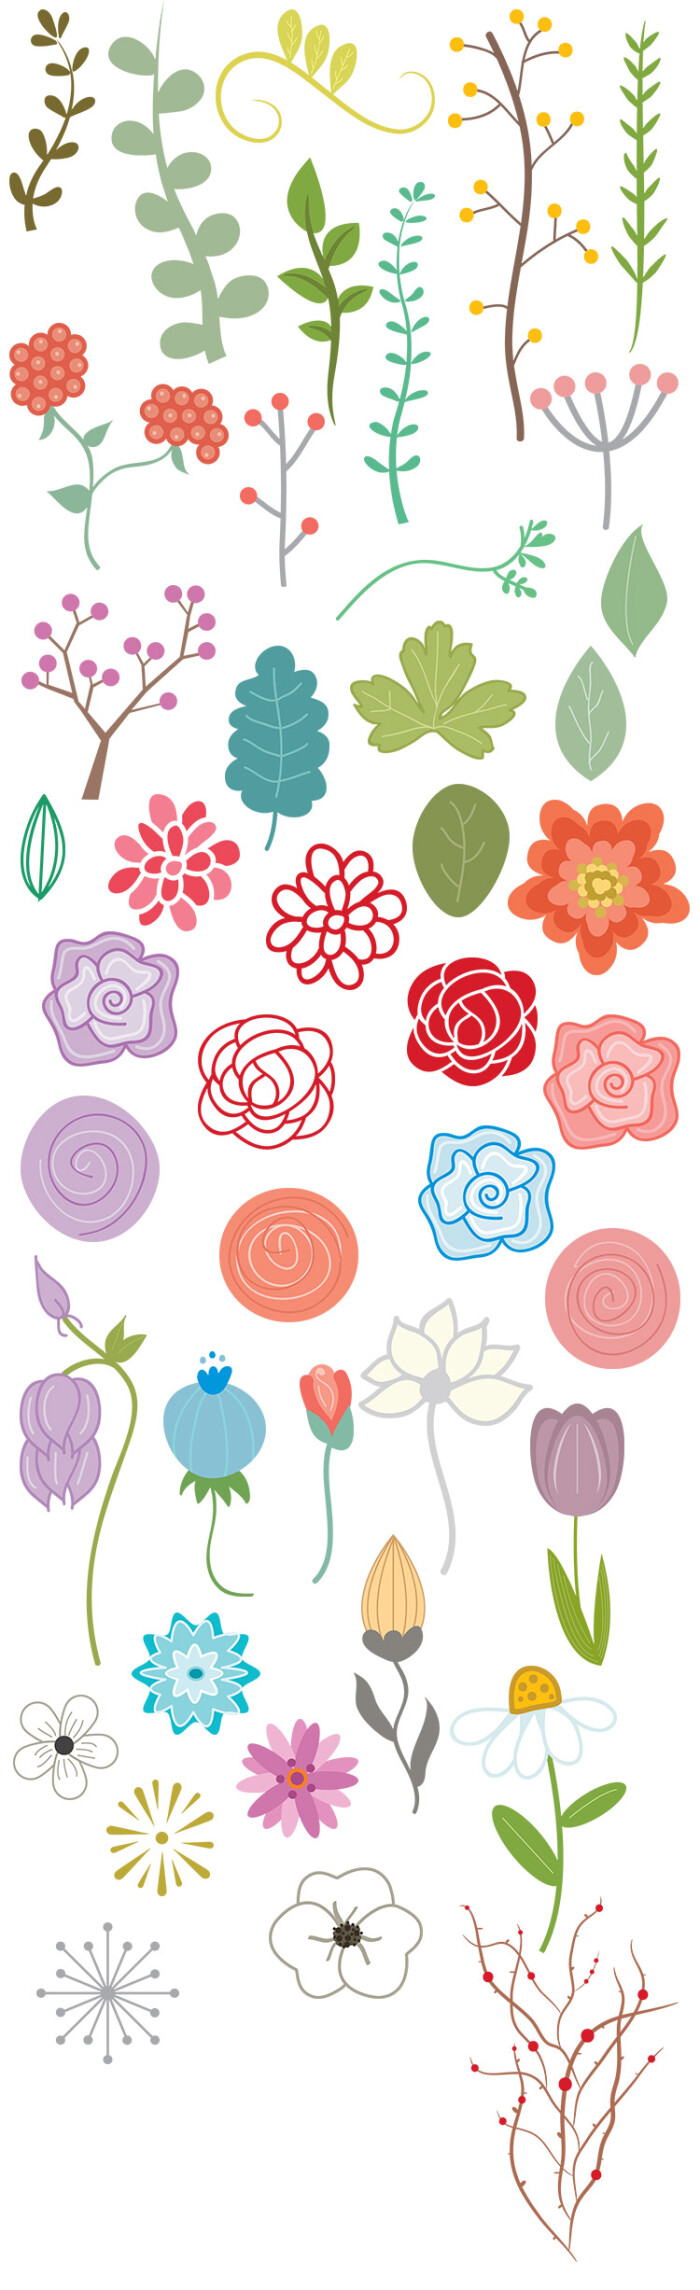 卡通儿童手绘花卉植物花朵绿叶玫瑰树木剪贴画素材矢量png模板